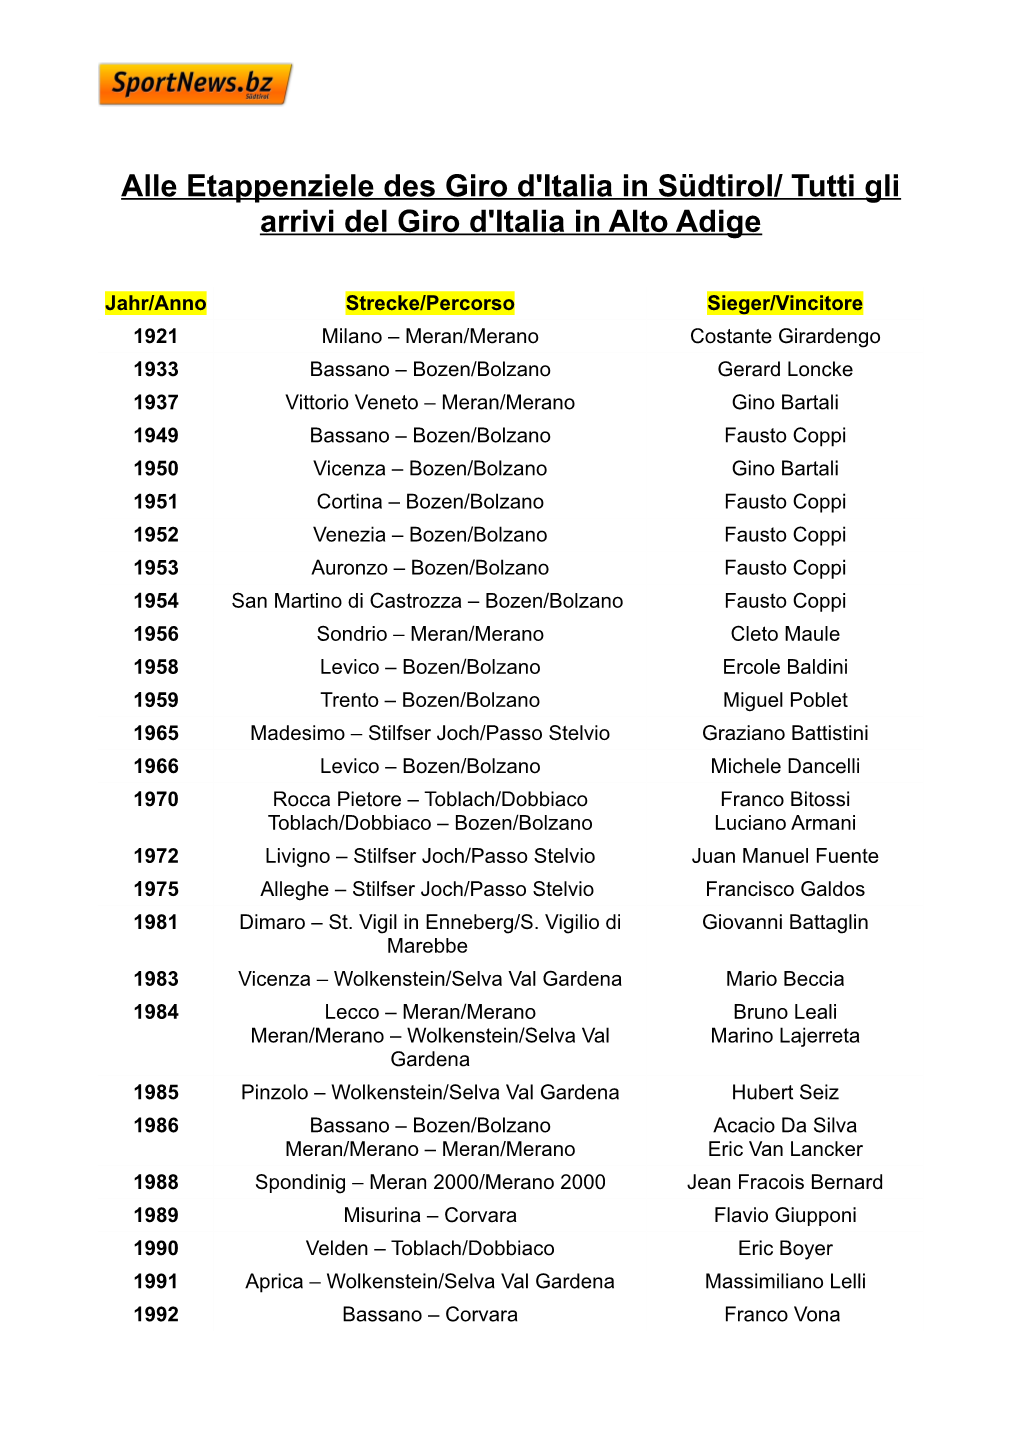 Tutti Gli Arrivi Del Giro D'italia in Alto Adige